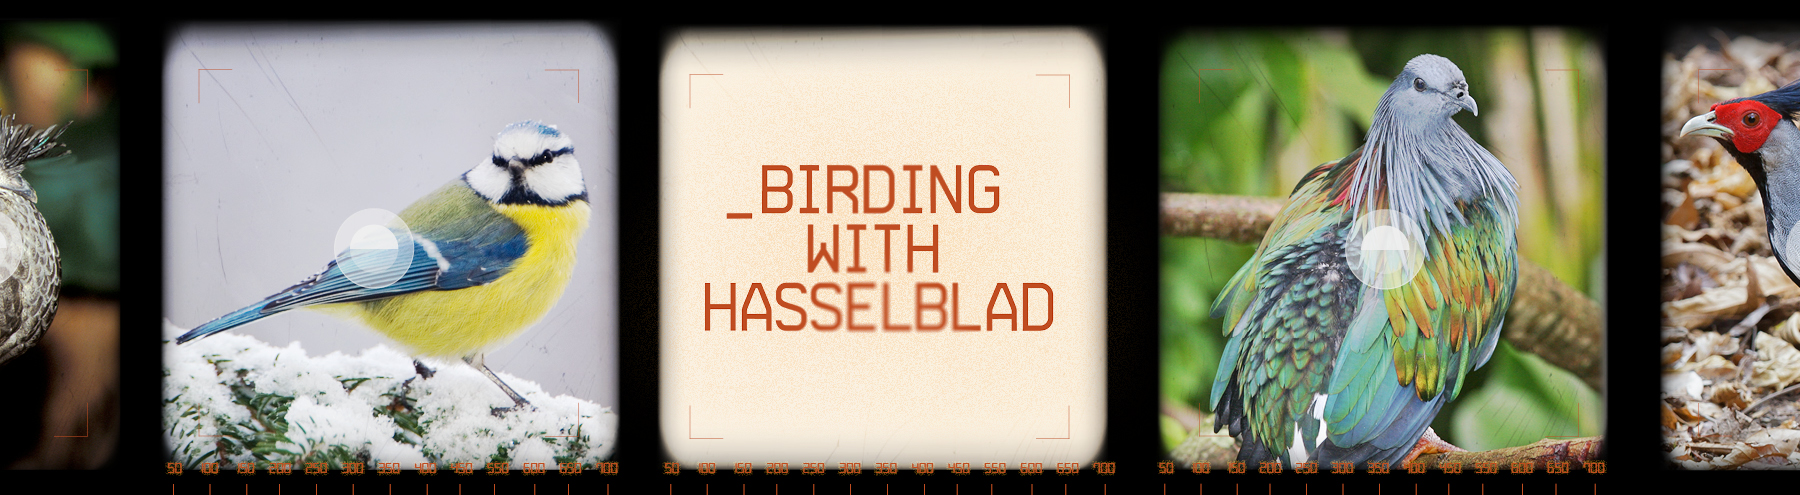 Birding with Hasselblad